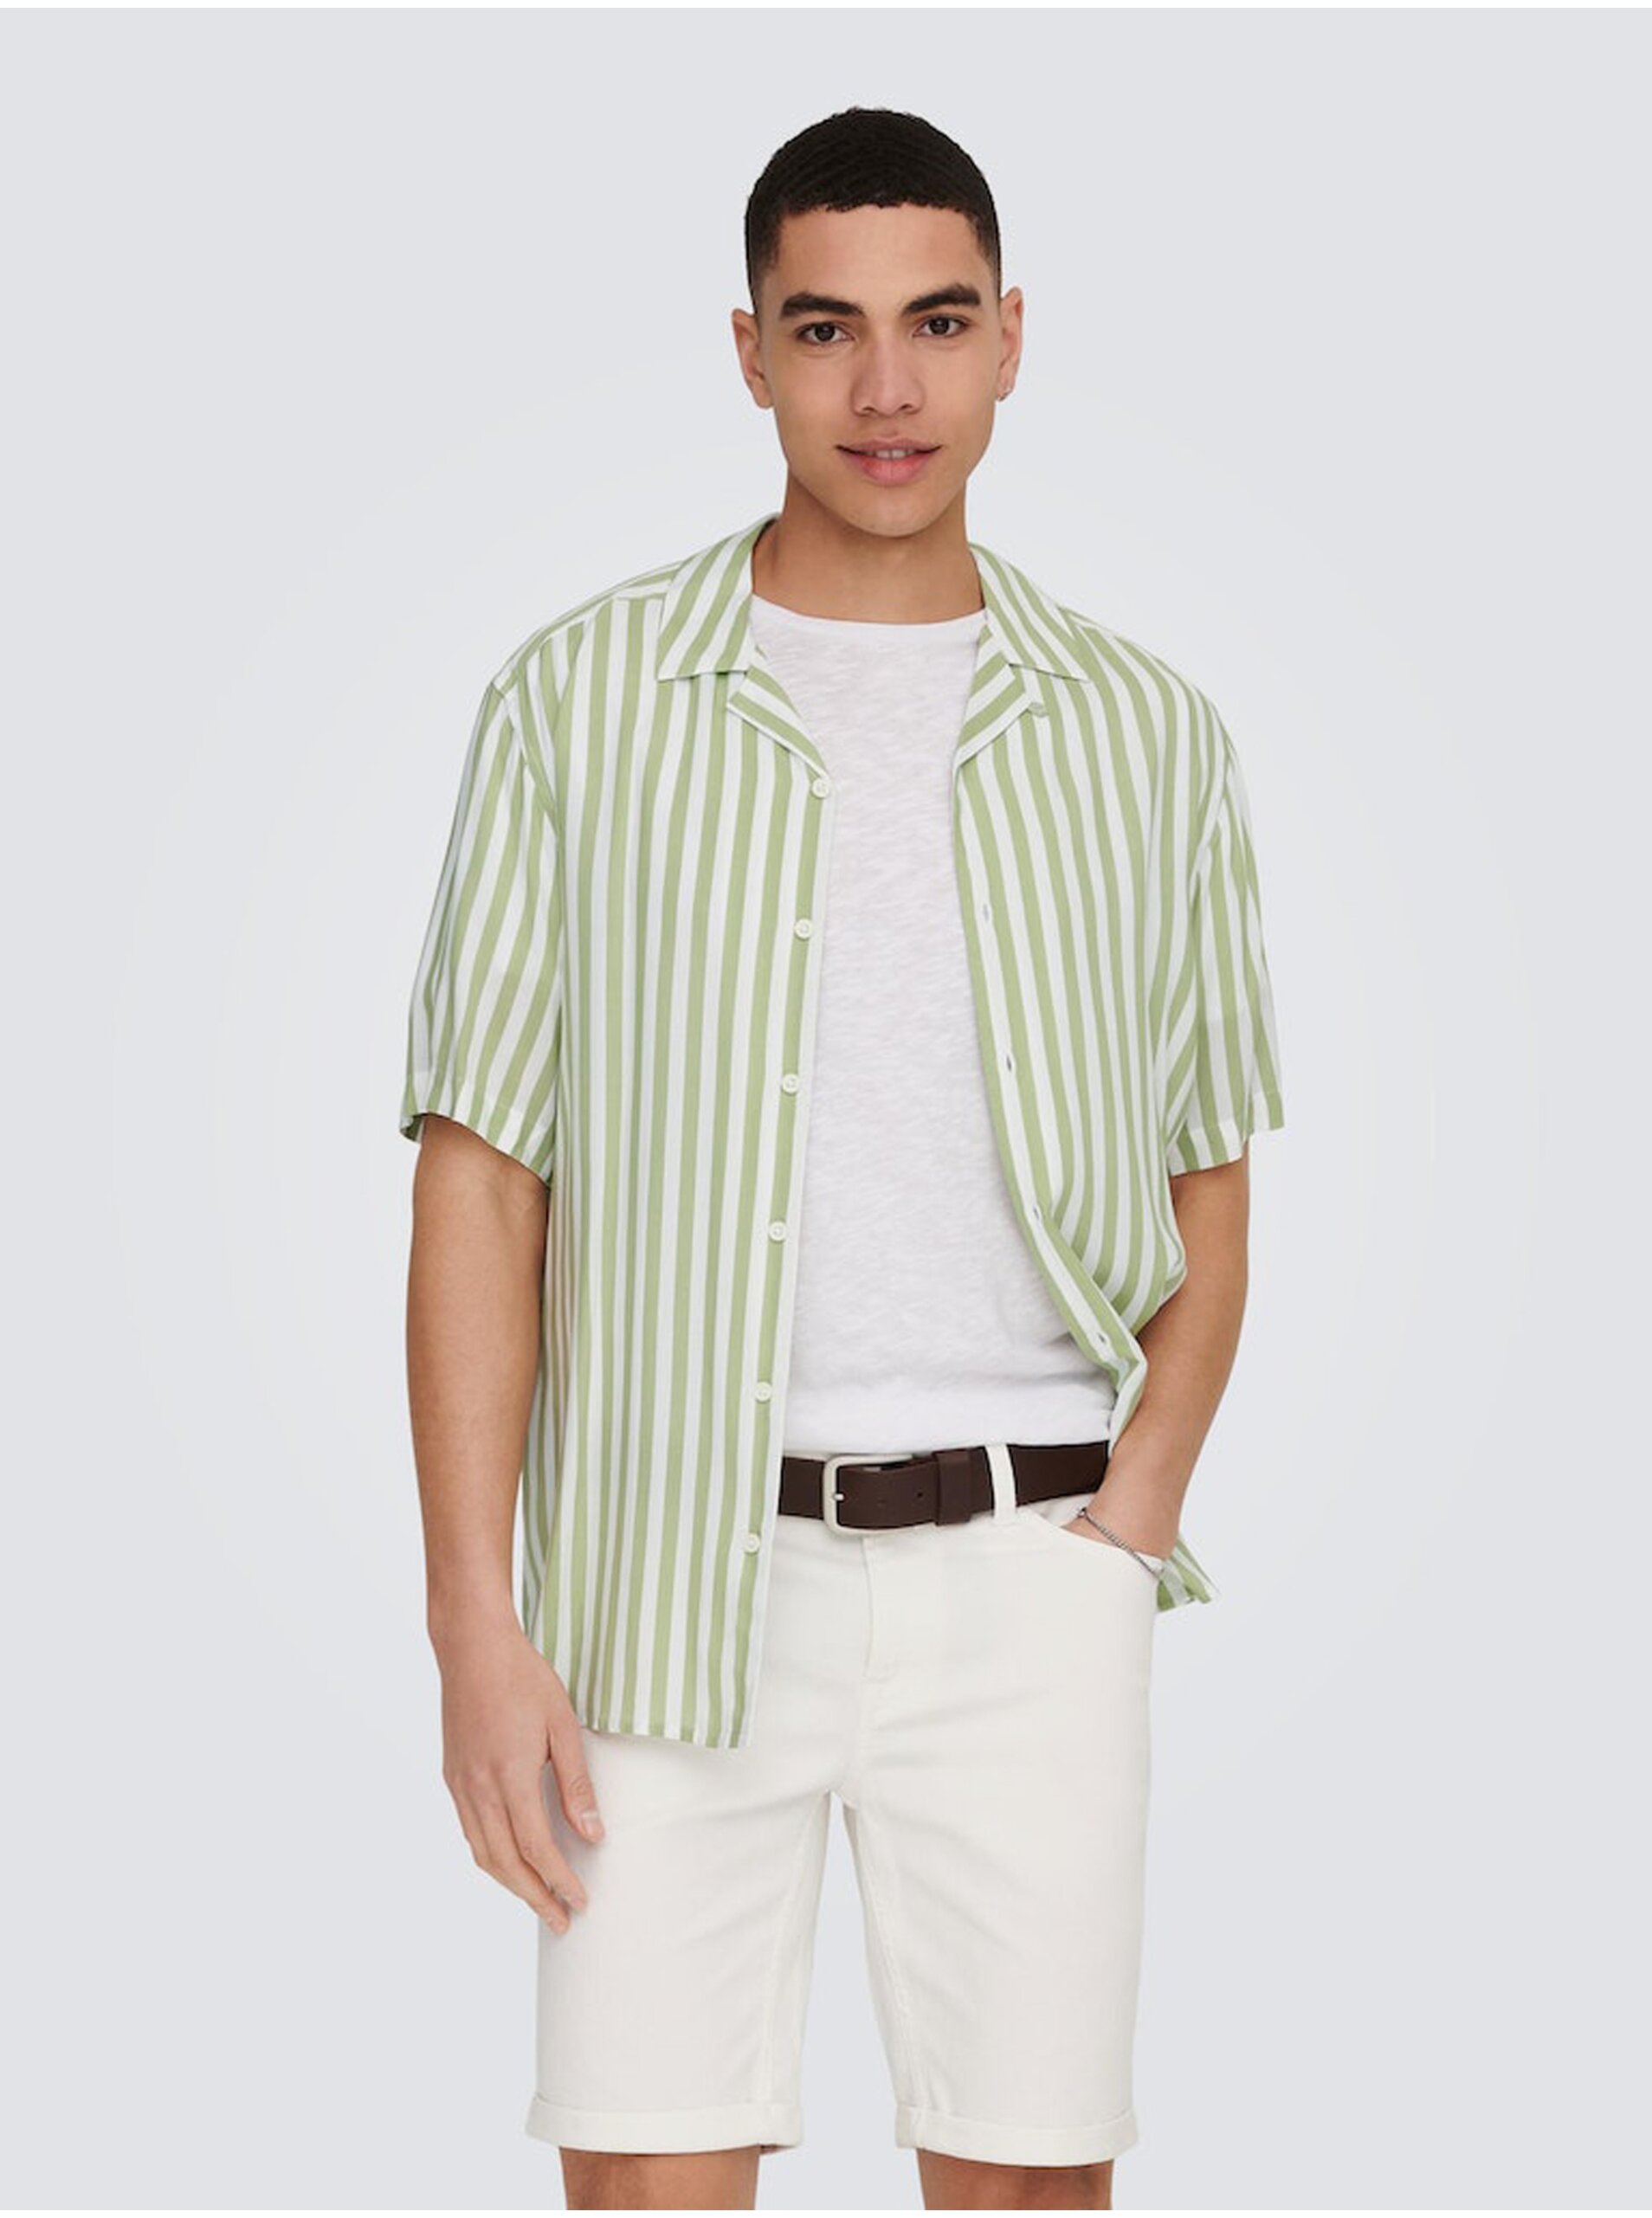 Lacno Bielo-zelená pánska pruhovaná košeľa s krátkym rukávom ONLY & SONS Wayne